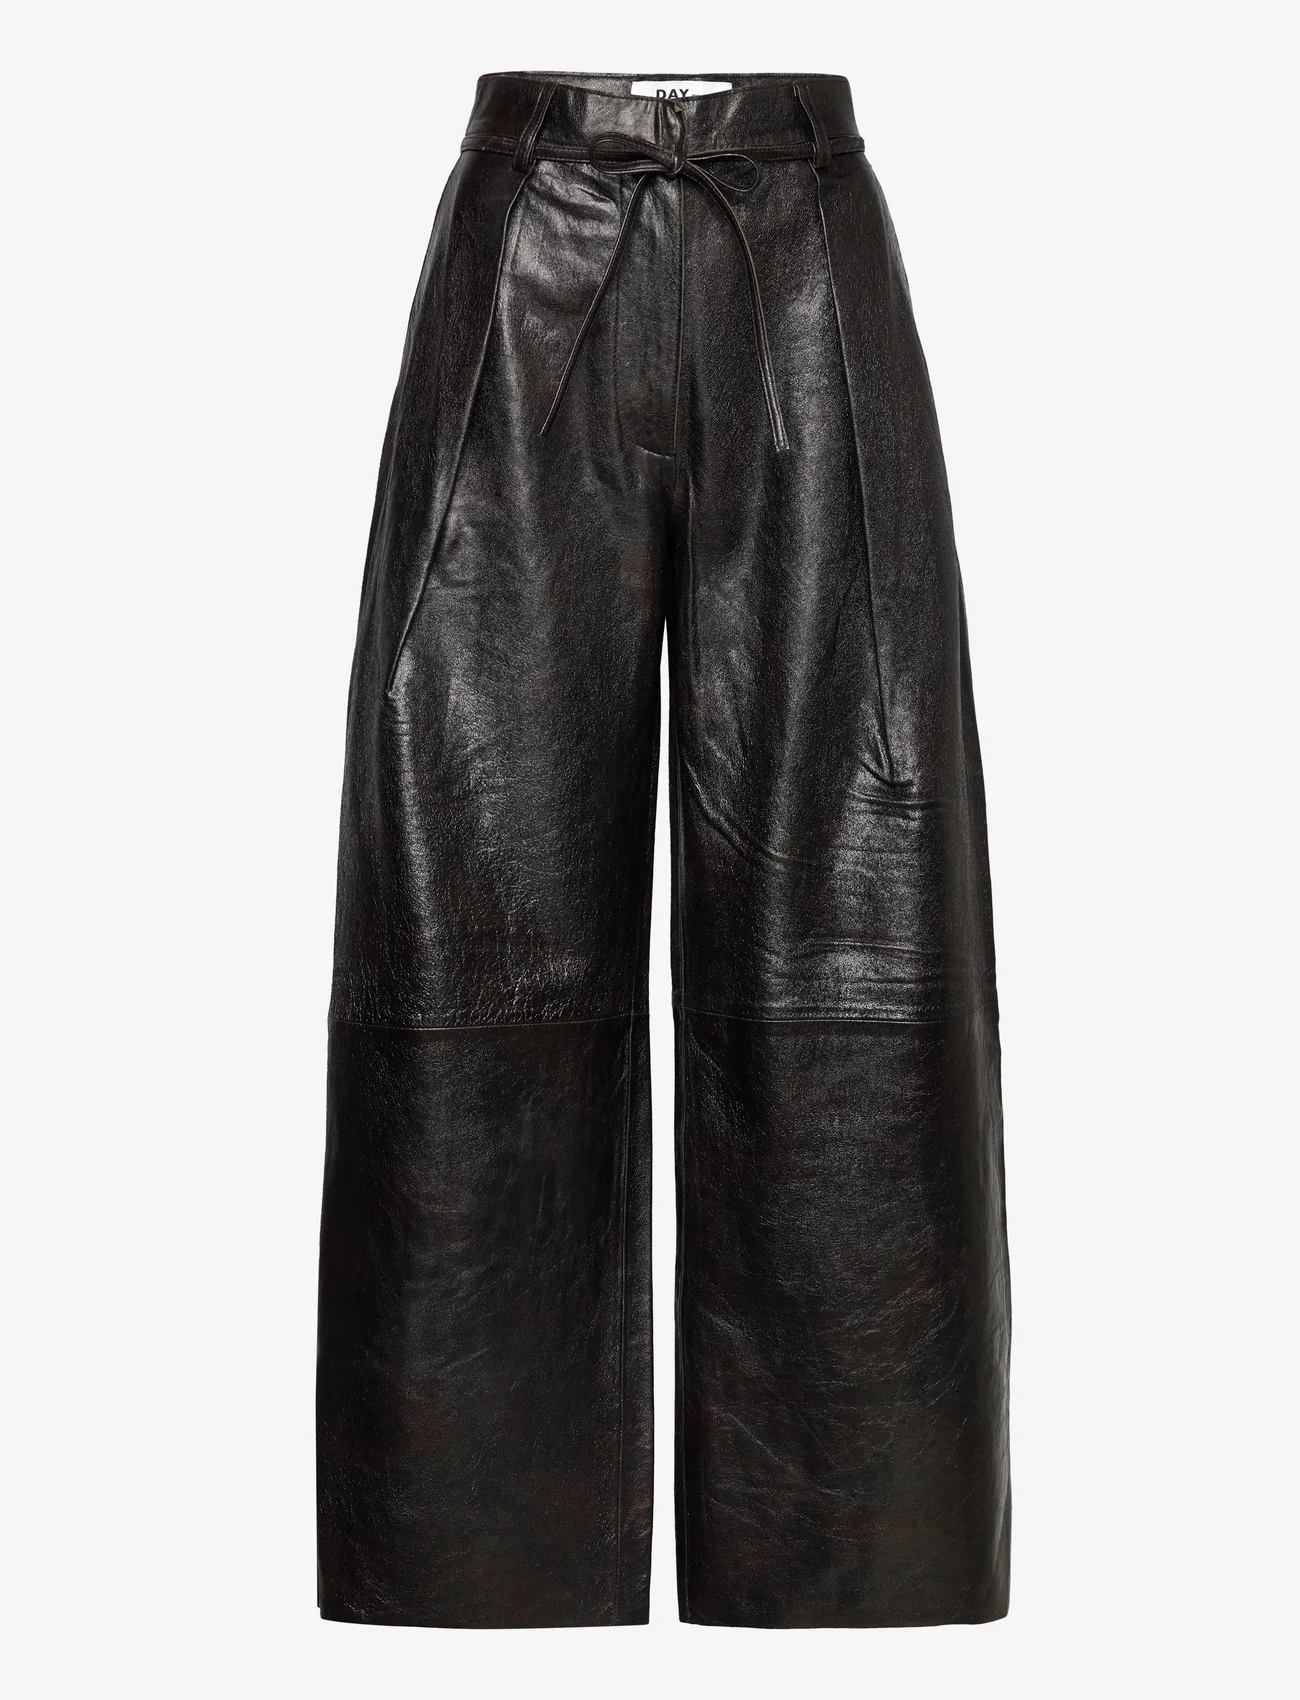 Day Birger et Mikkelsen - Ricardo - Sleek Leather - odzież imprezowa w cenach outletowych - licorice - 0